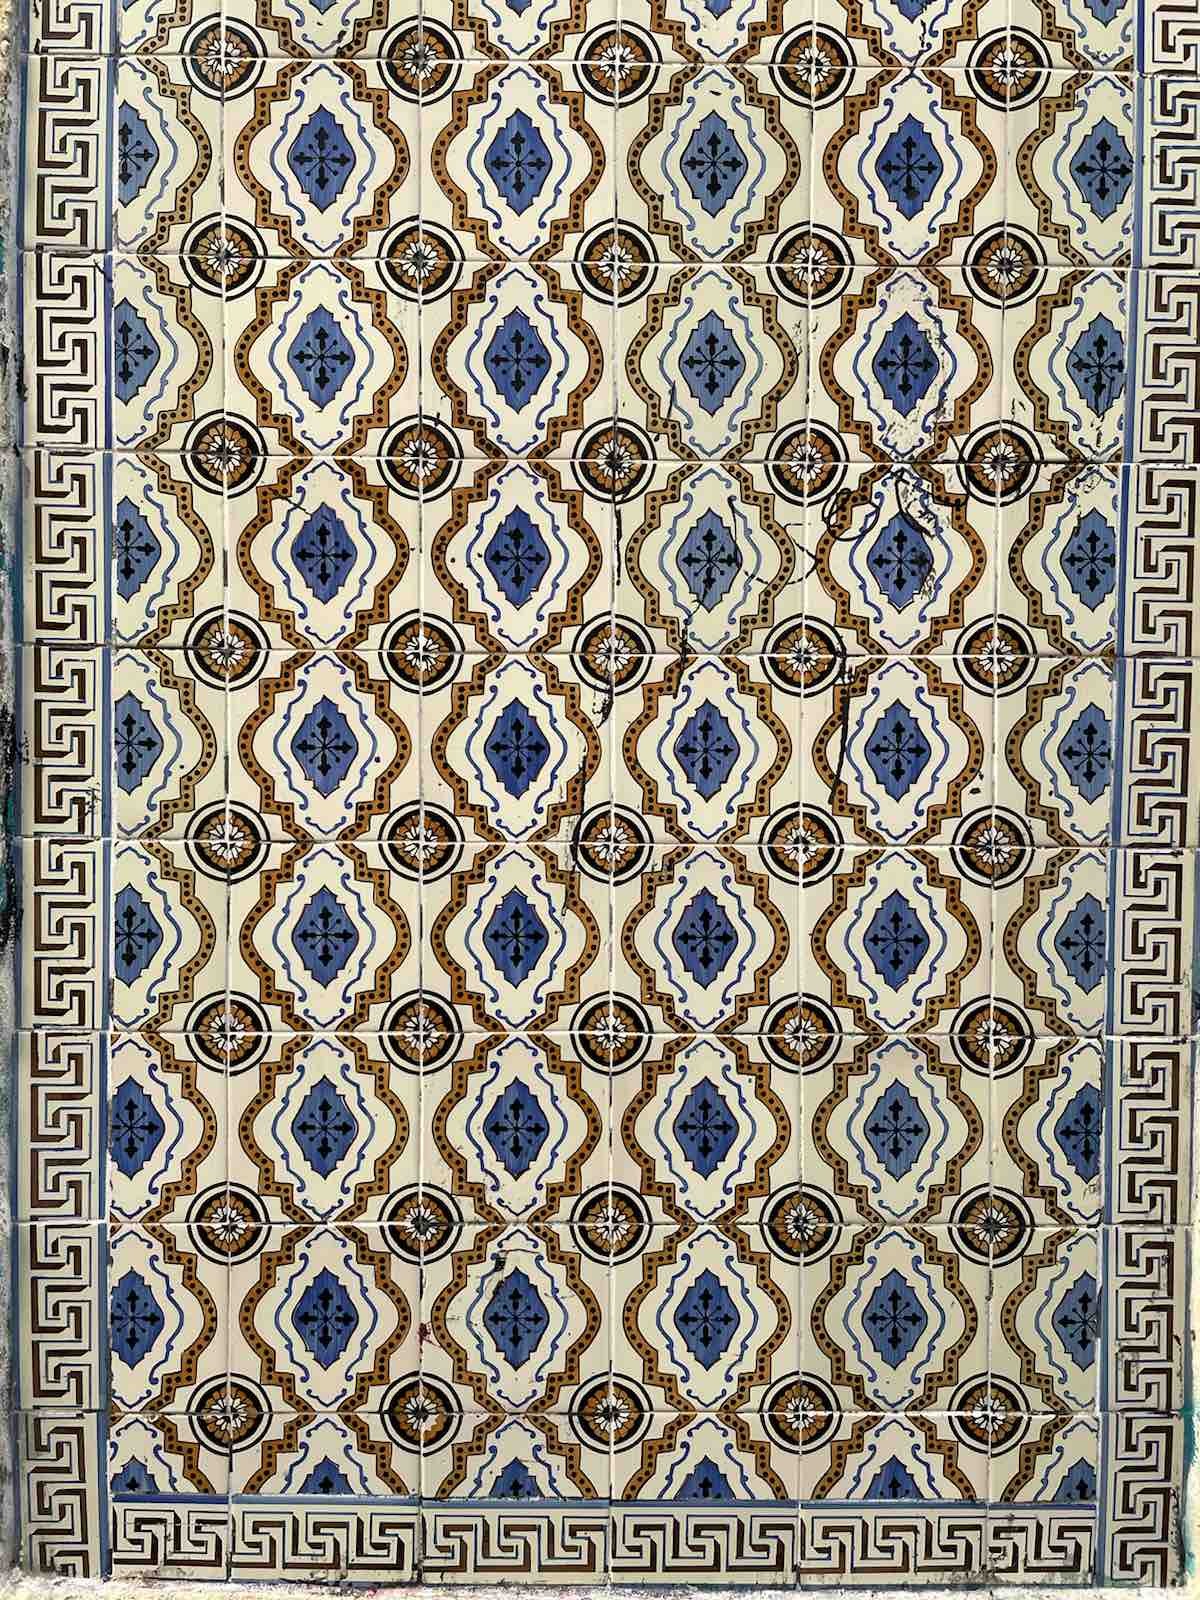 Το παραδοσιακό πλακίδιο azulejos